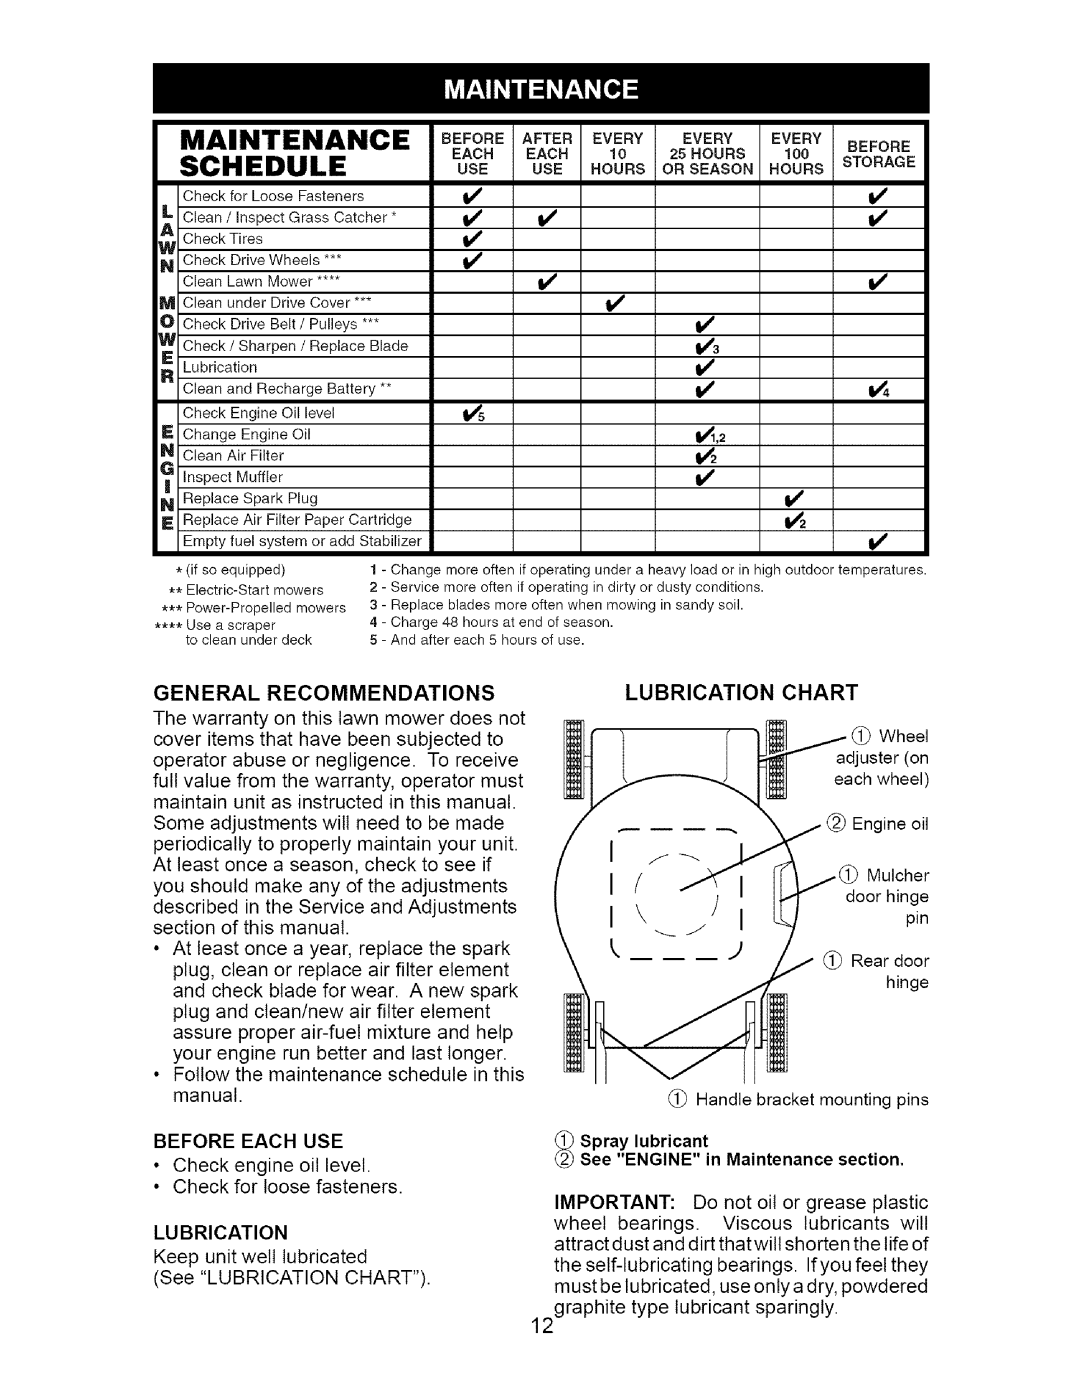 Craftsman 917.376671 owner manual Schedule, vv v v3 vl, General, Recommendations, Lu Brication, _ Spray lubricant 